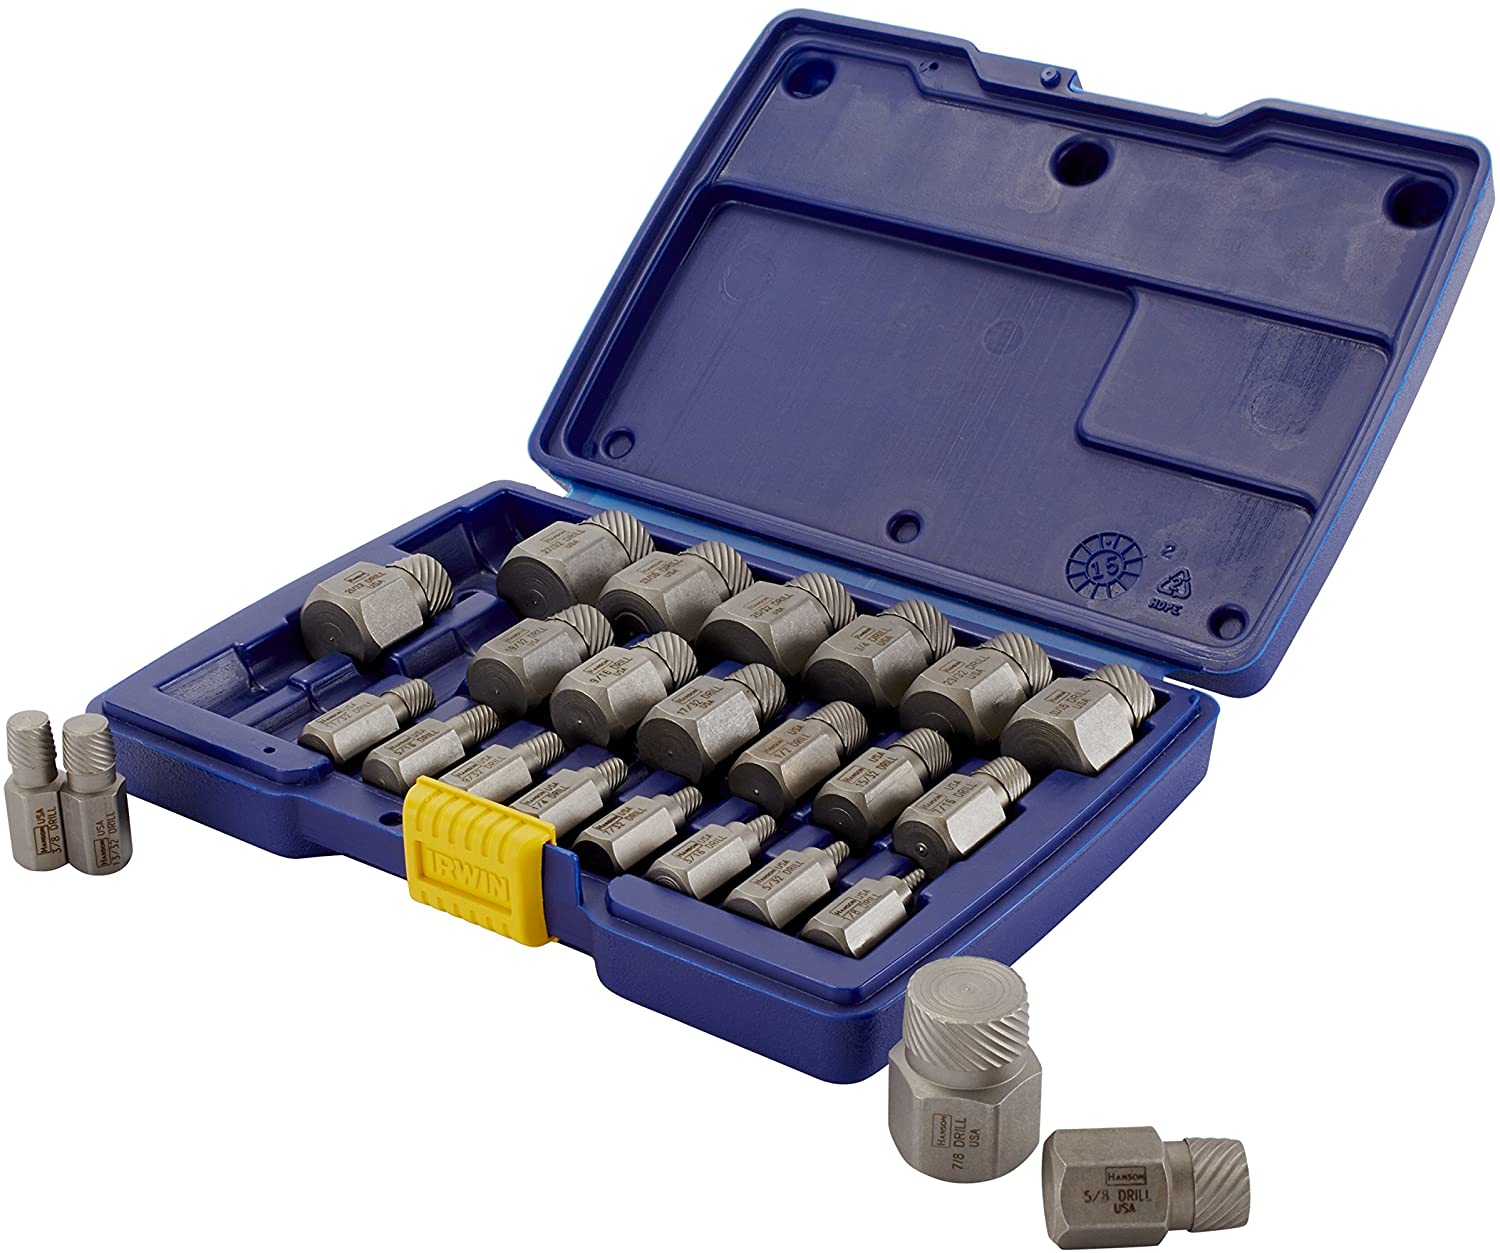 Irwin Industrial Tool 53227 Hex Head Multi-Spline Extractor Set. 25-Piece - MPR Tools & Equipment